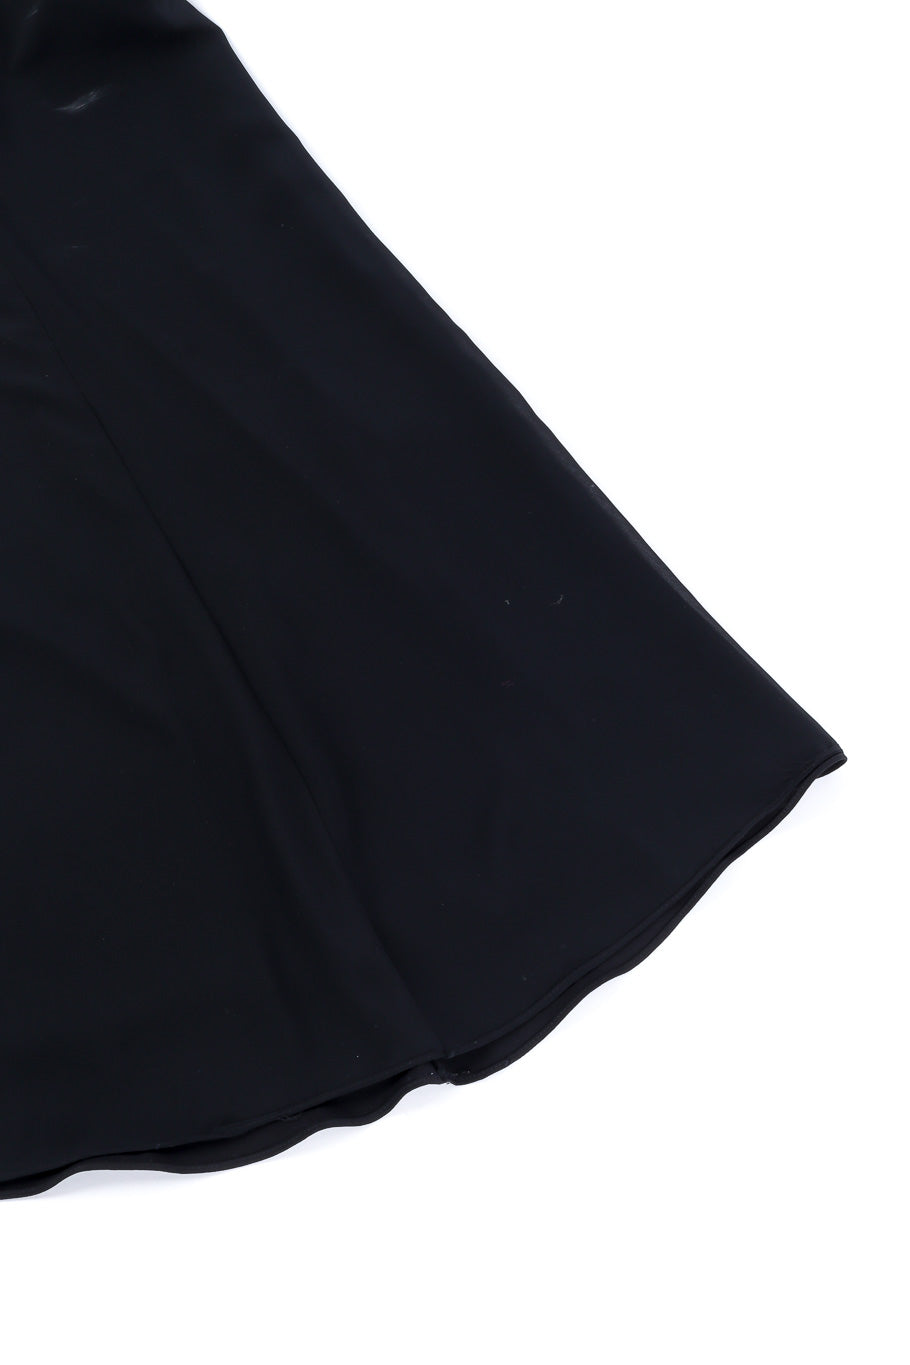 Valentino sleeveless maxi dress fabric detail @recessla